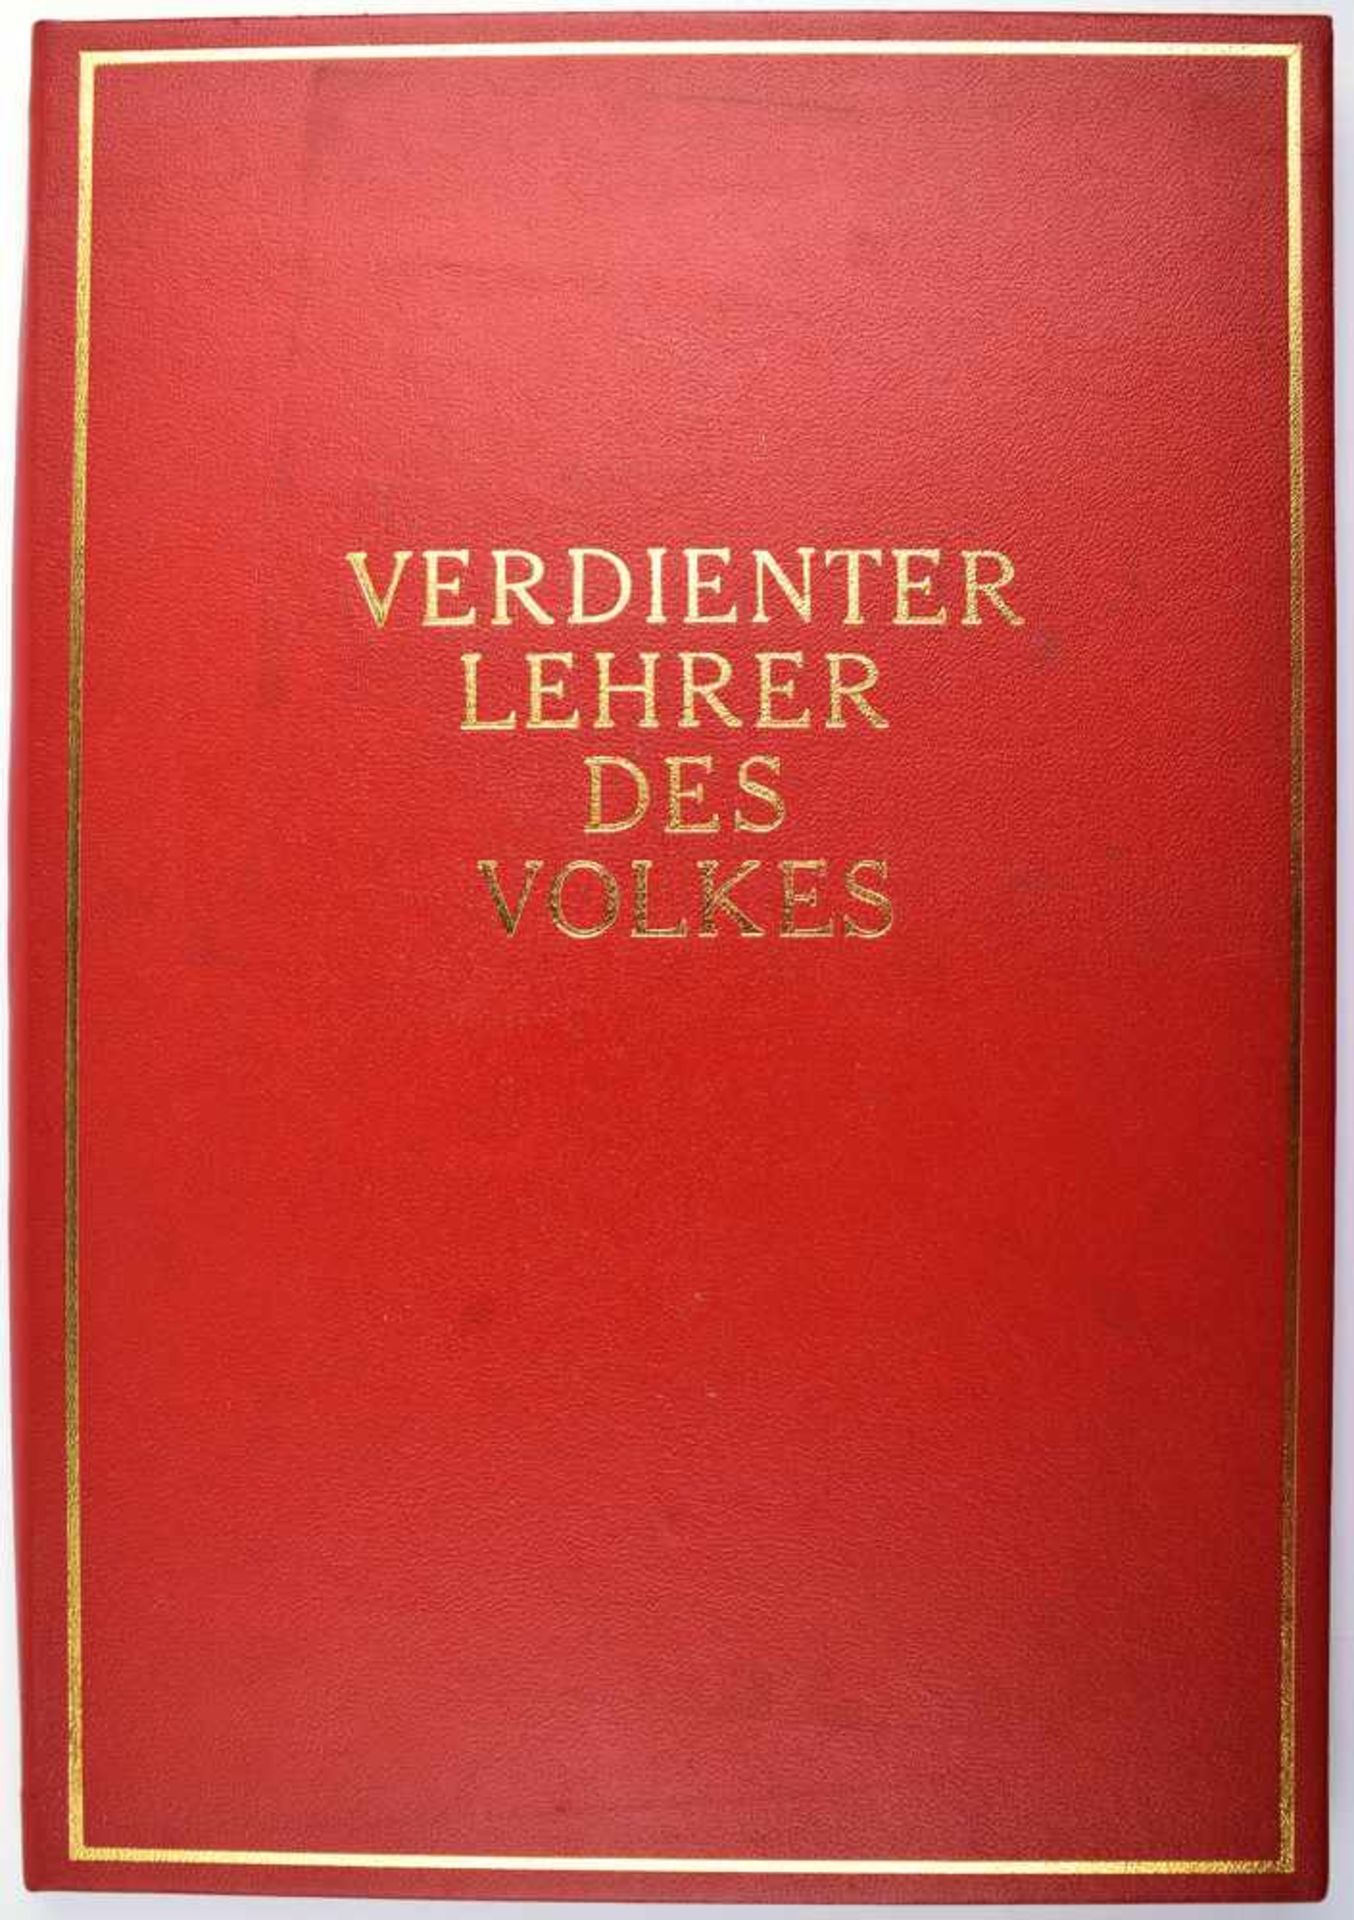 VERLEIHUNGSURKUNDE VERDIENTER LEHRER DES VOLKES, rote Ledermappe goldgeprägt, VU 1971 Berlin, mit - Bild 2 aus 2